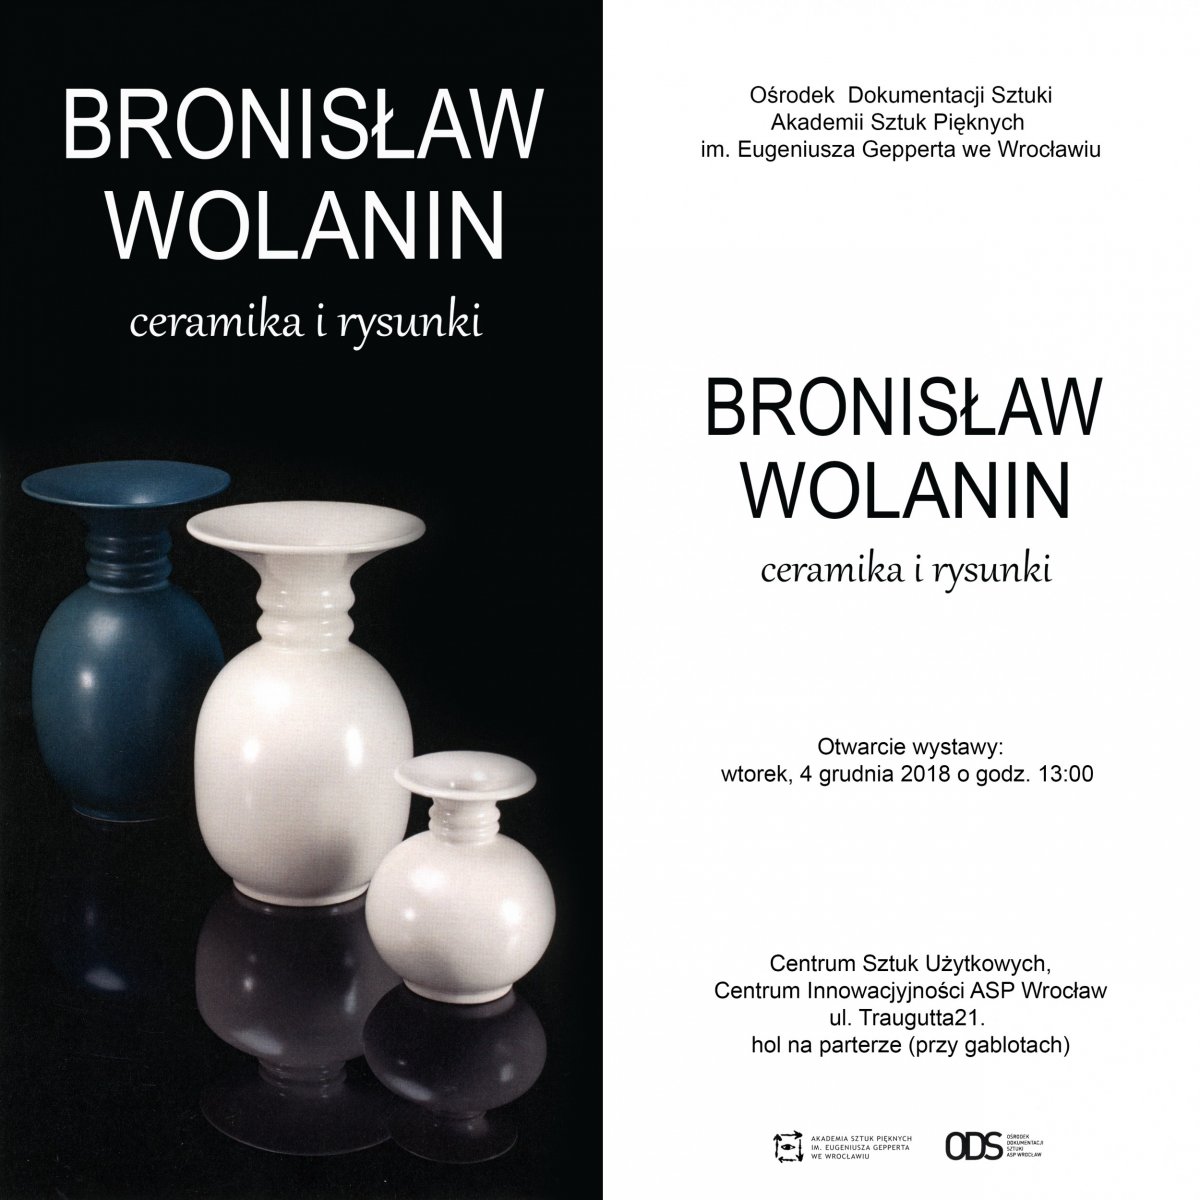 Bronisław Wolanin, ceramika i rysunki